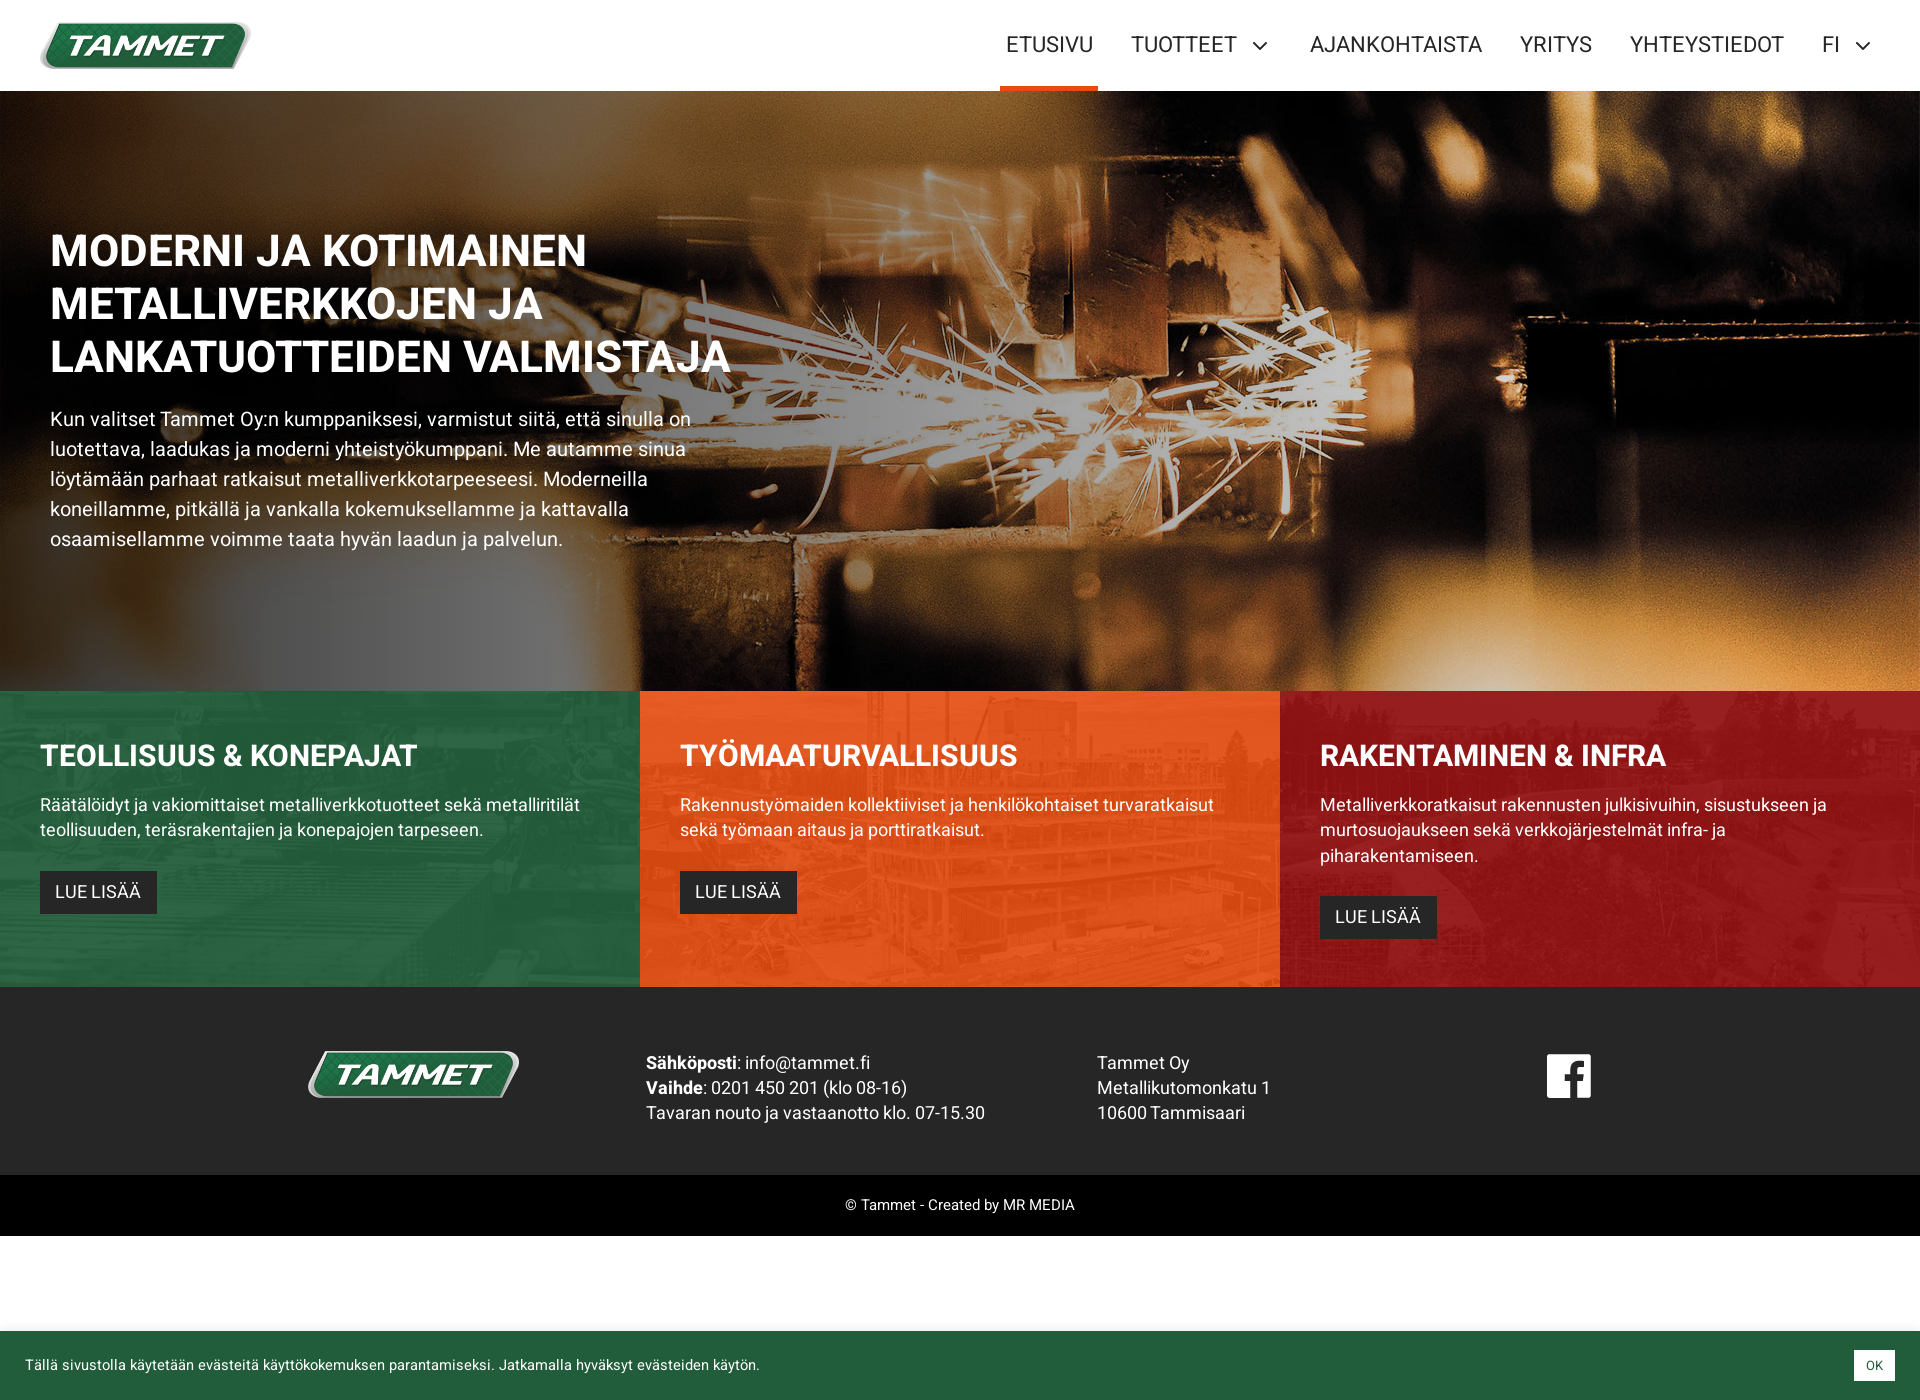 Skärmdump för portit.fi